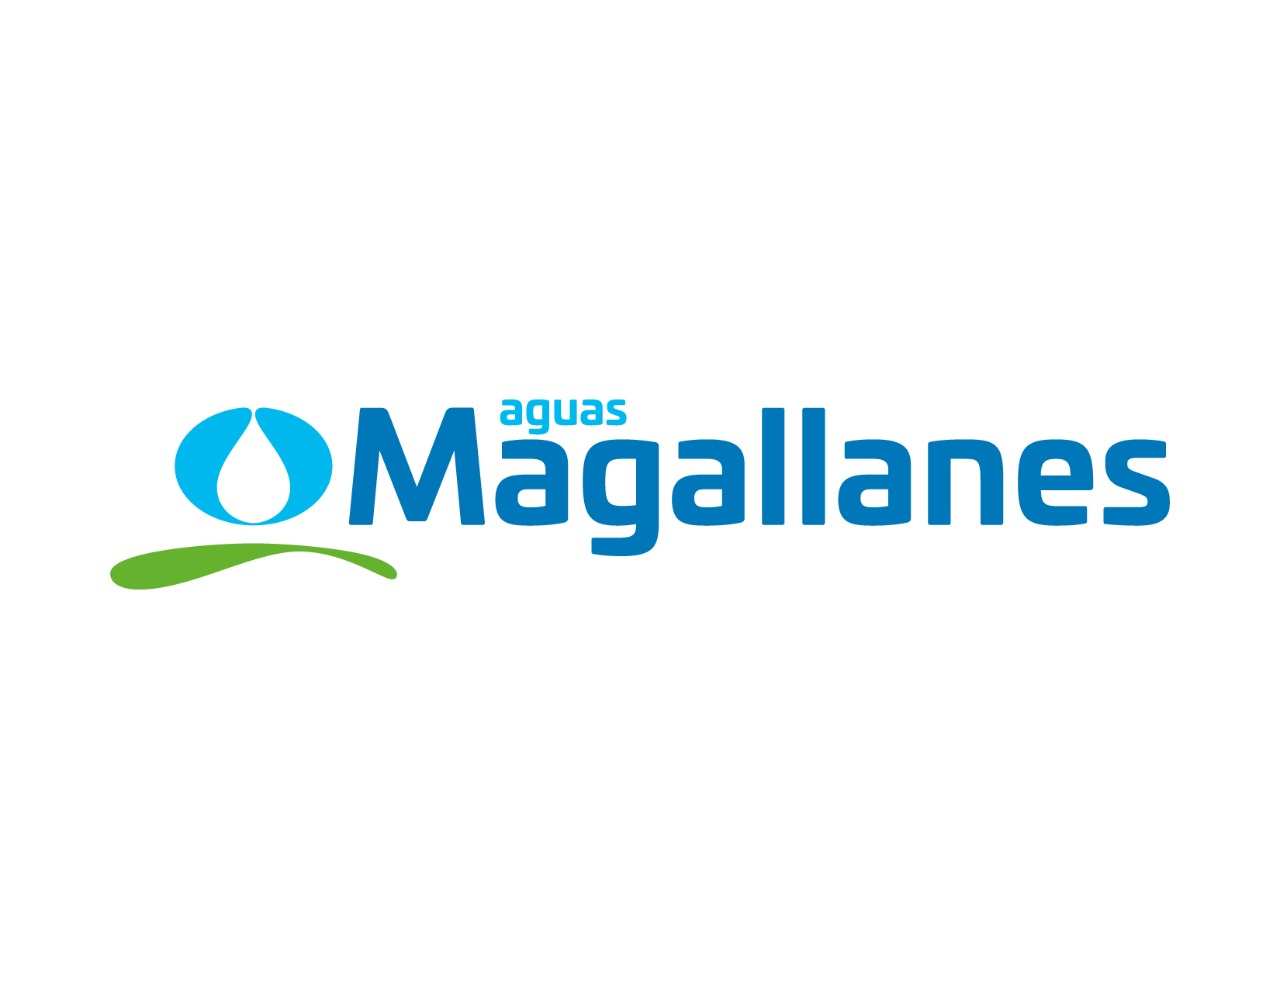 Se pronostica helada para esta noche: Aguas Magallanes llama a no bajar la guardia y proteger instalaciones sanitarias domiciliarias